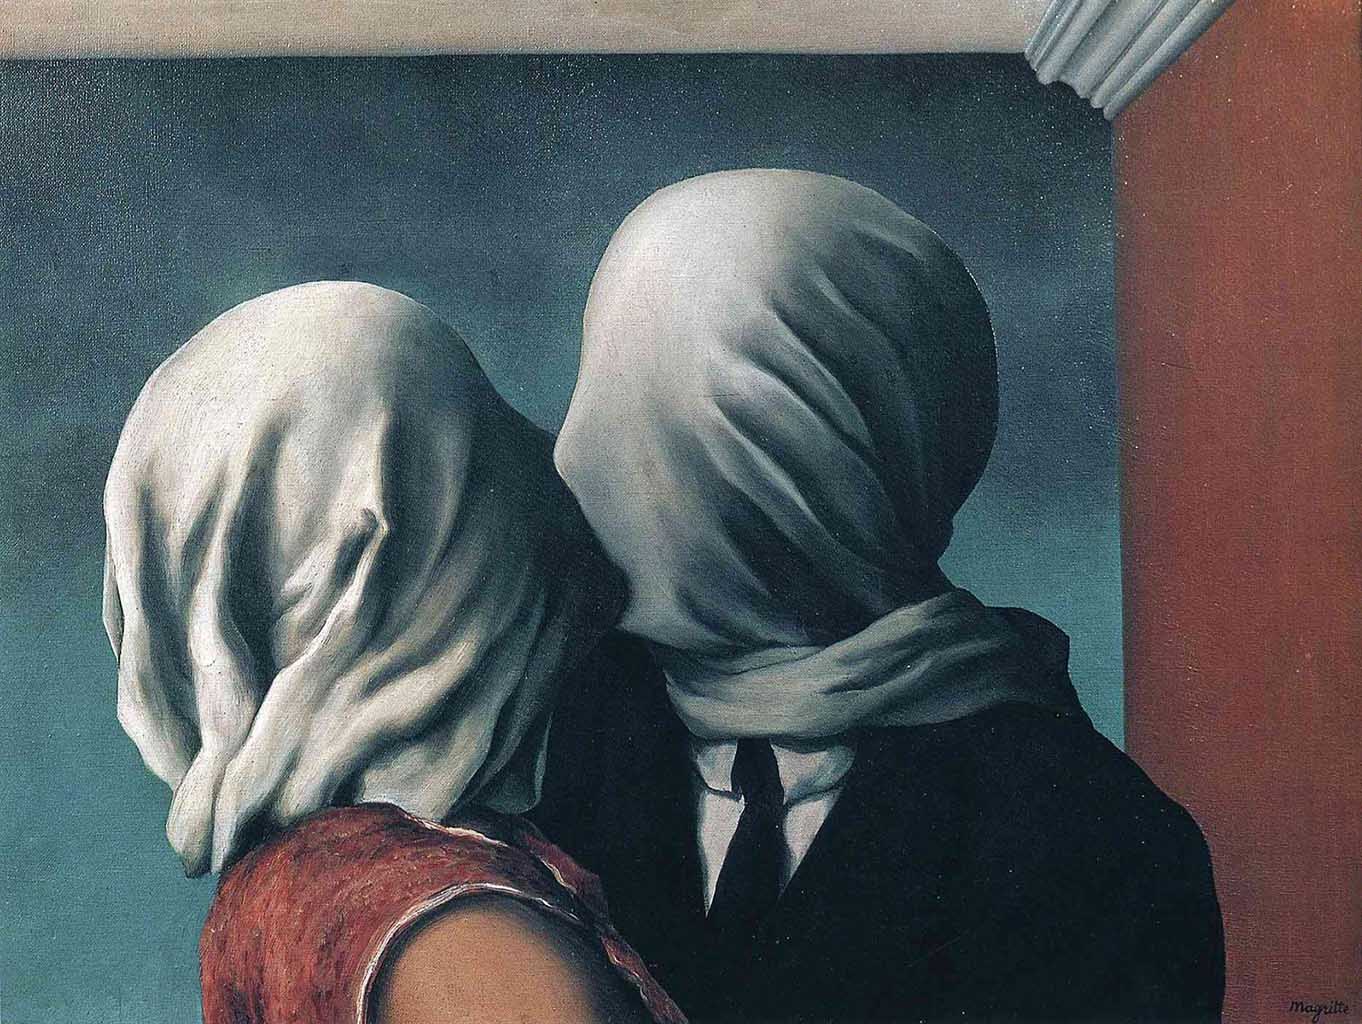 Рене Магритт (Rene Magritte), “Lovers“